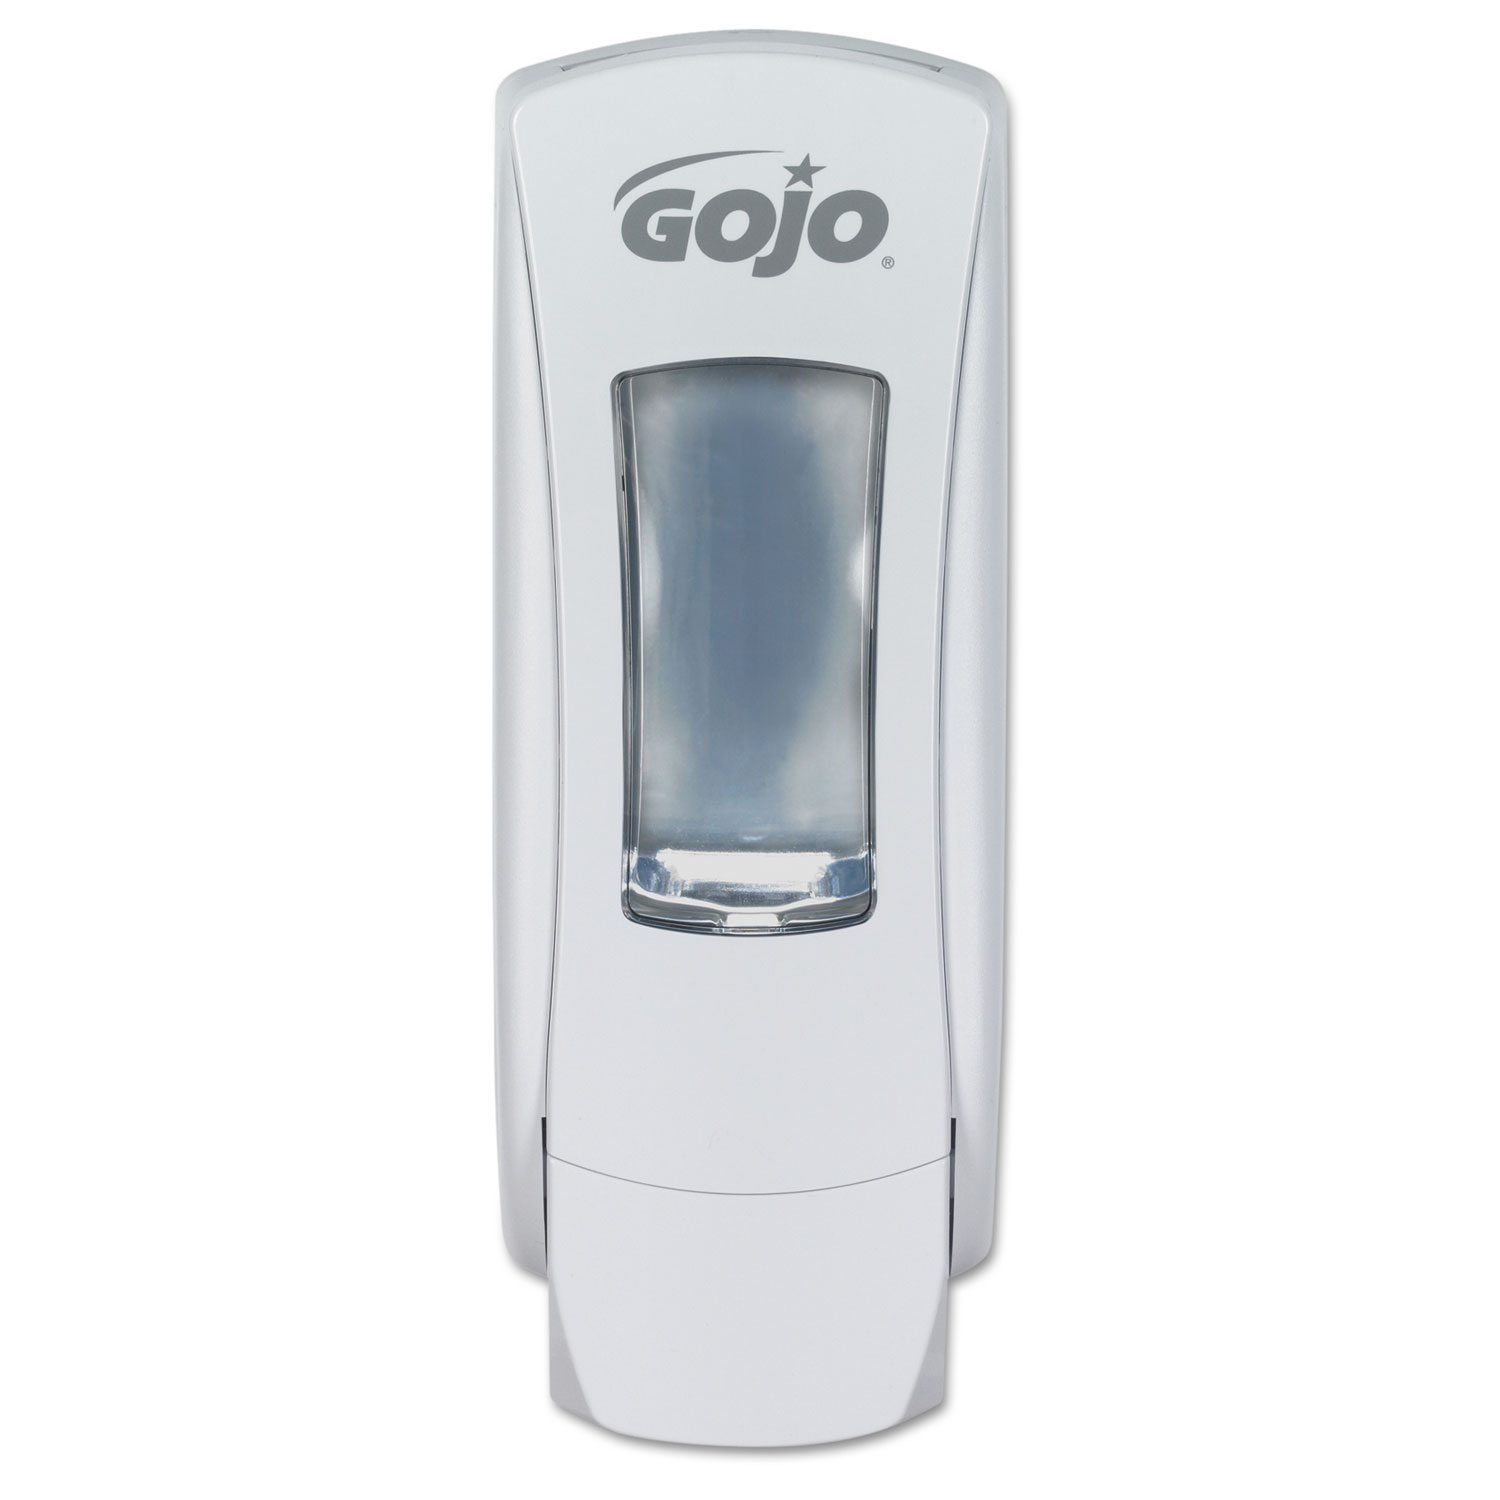  GOJO 8880-06 ADX-12 Dispenser, 1250 mL, 4.5 x 4 x 11.75, White (GOJ888006) 